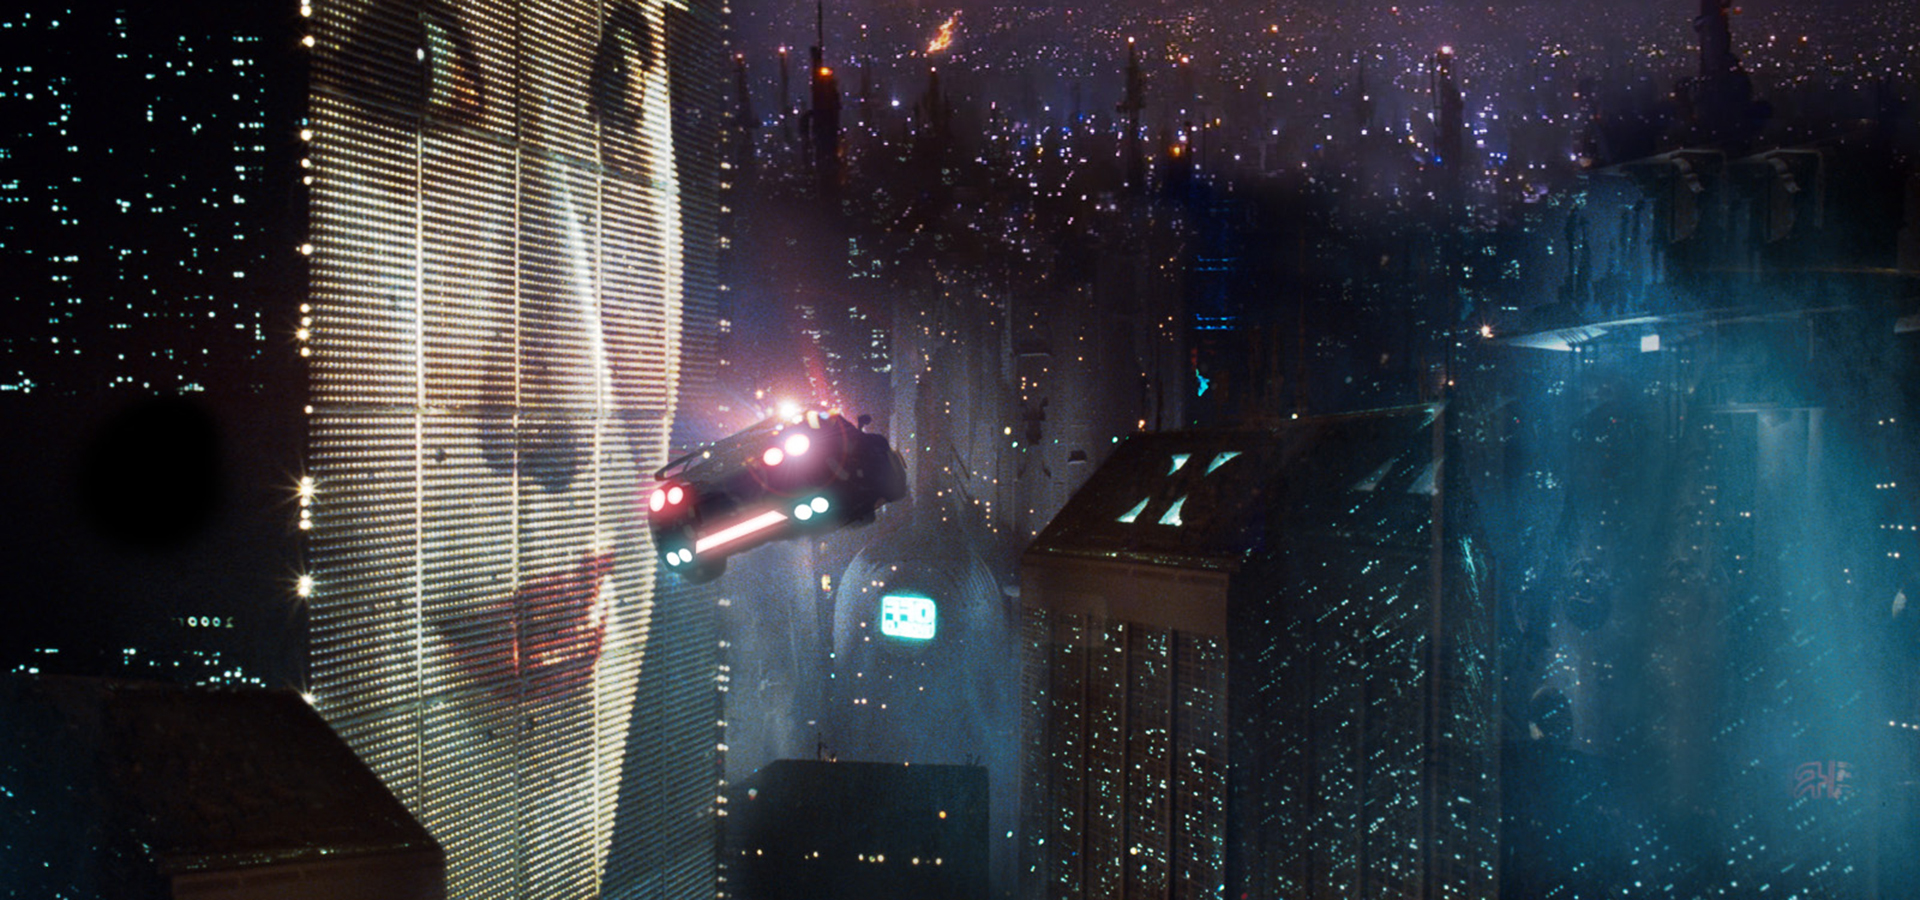 بیلوردهای دیجیتال در بلید رانر (Blade Runner)